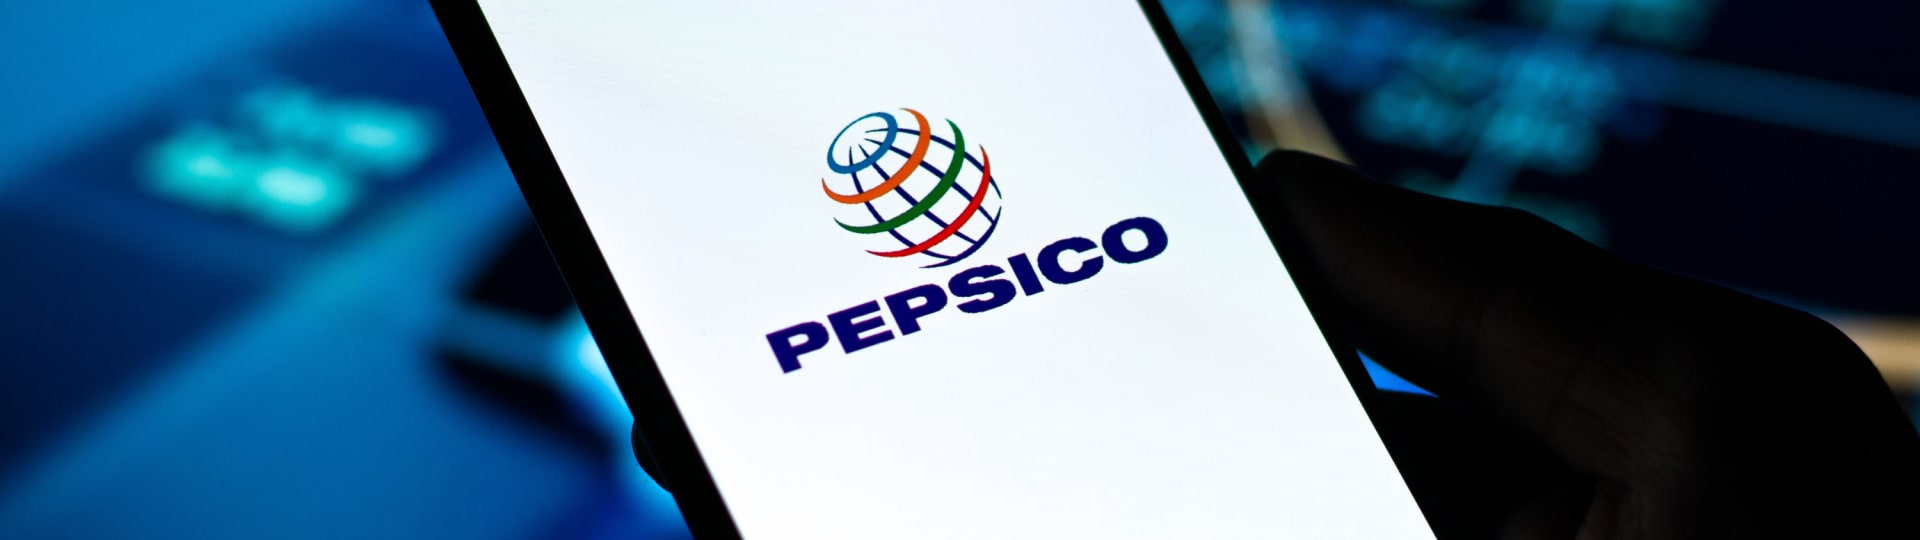 Firma PepsiCo výrazně zvýšila čtvrtletní zisk